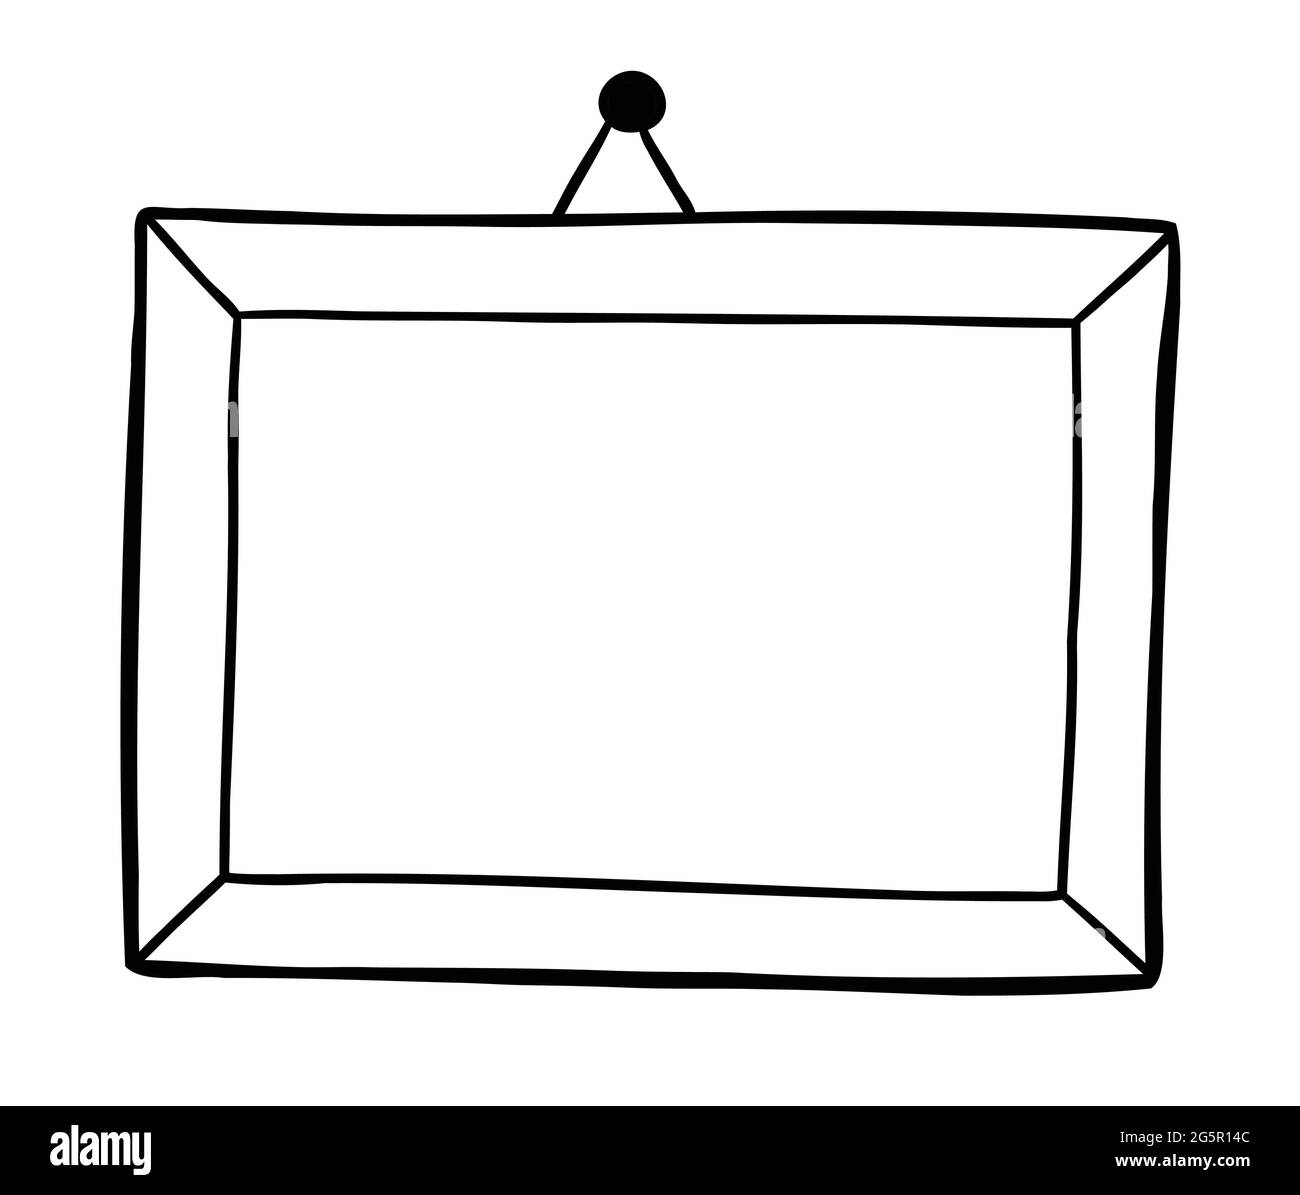 Illustration vectorielle de dessin animé d'un cadre suspendu au mur.  Contour noir et couleur blanche Image Vectorielle Stock - Alamy